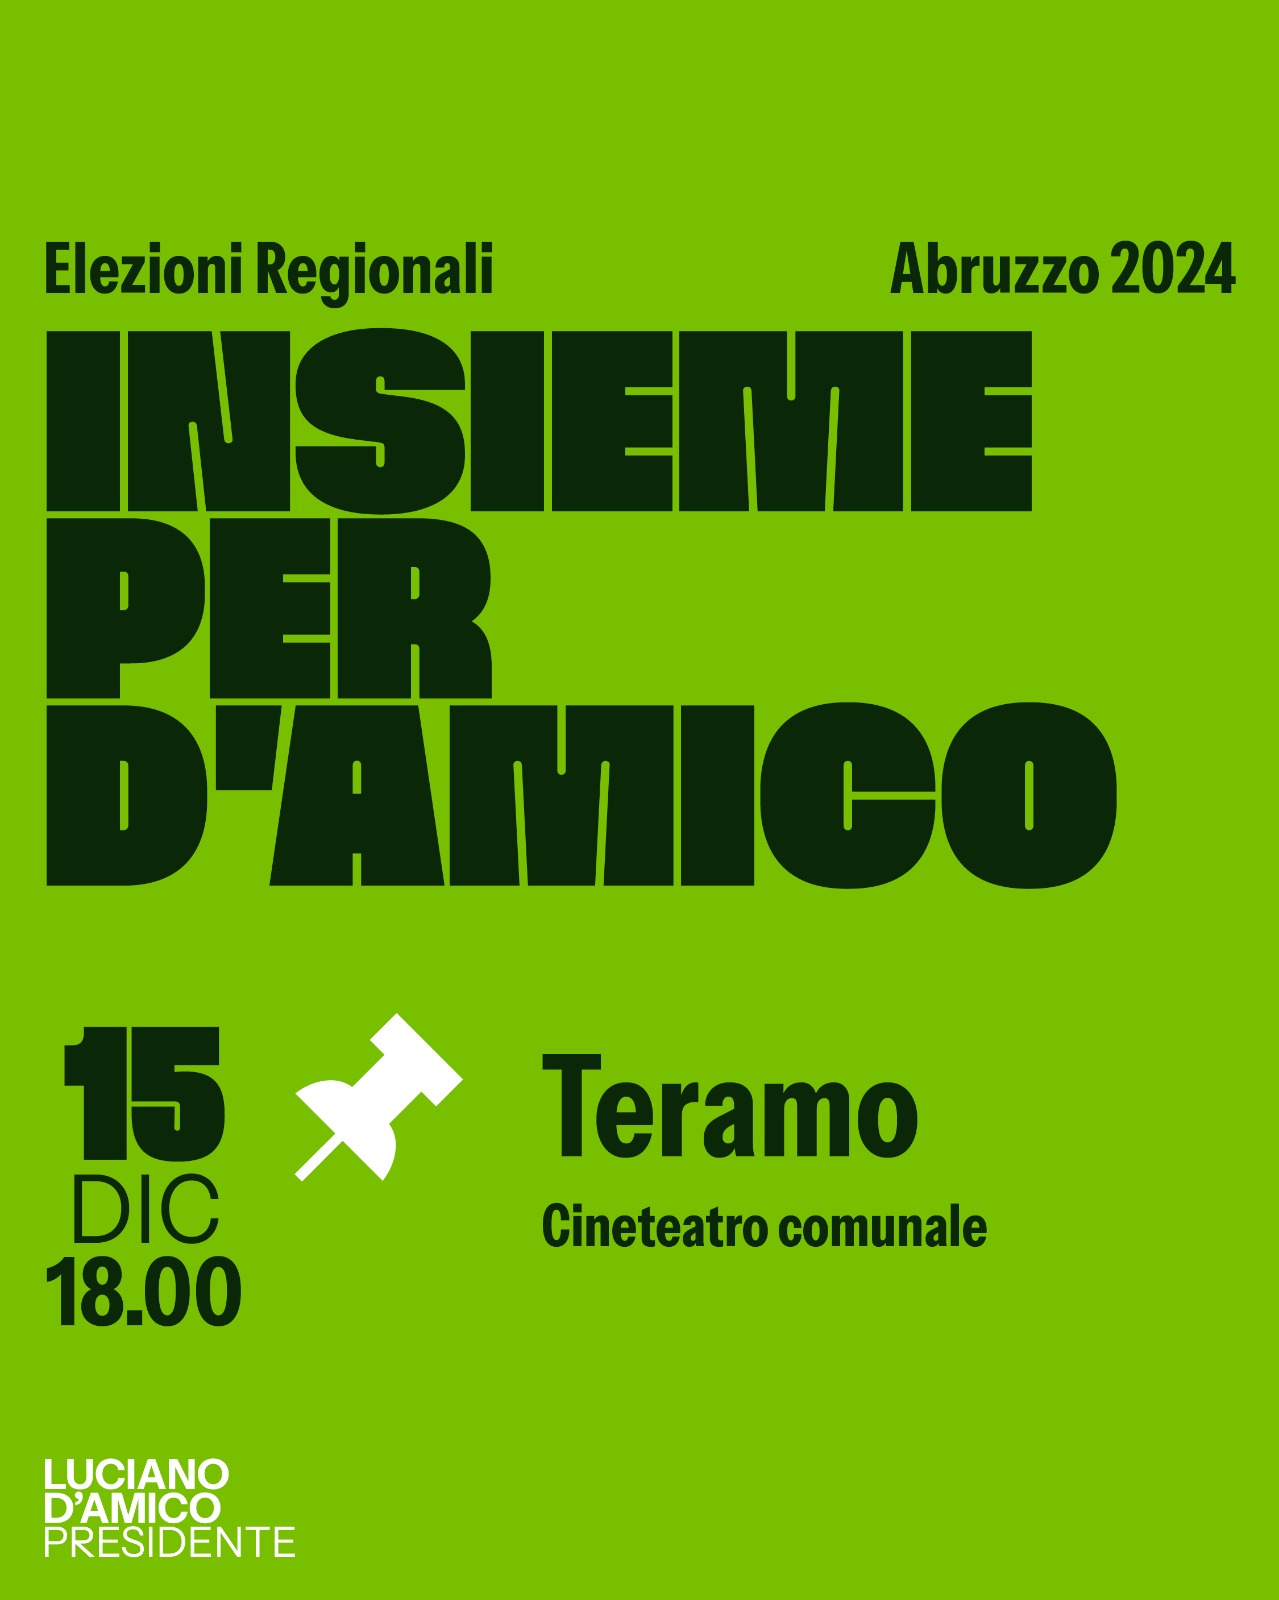 Venerdì 15 dicembre a Teramo il Patto per l’Abruzzo presenta Luciano D’Amico